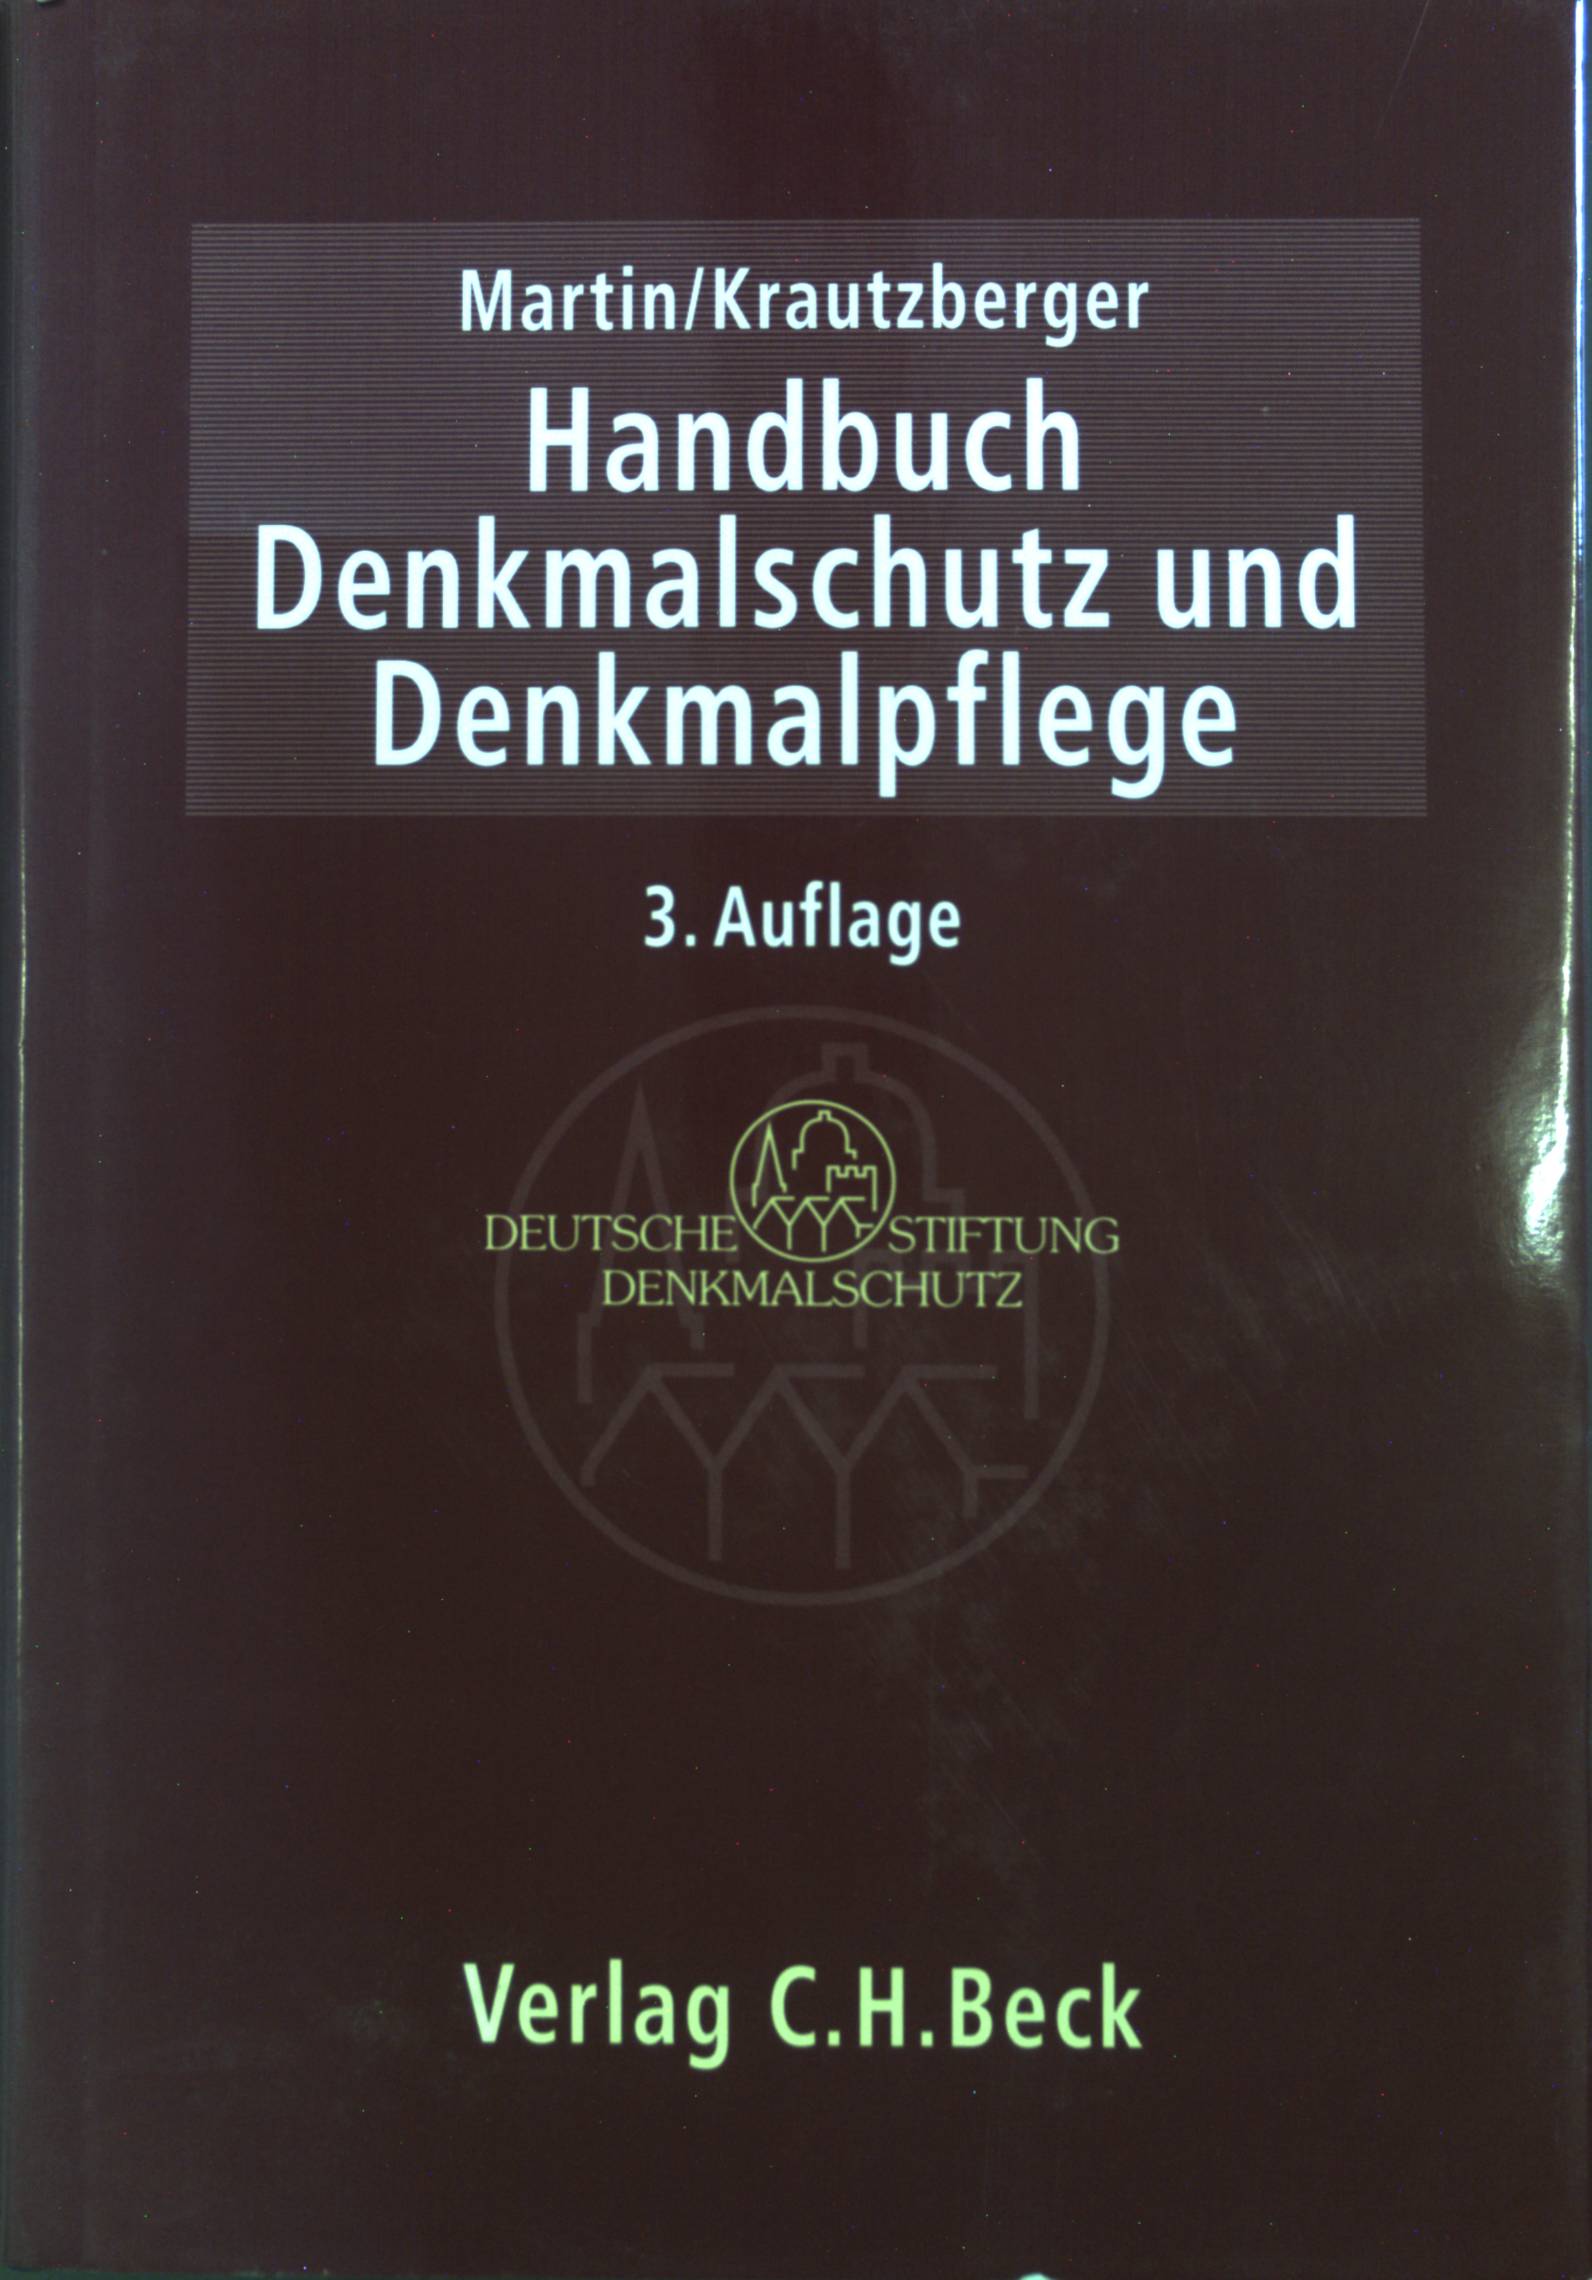 Handbuch Denkmalschutz und Denkmalpflege: einschließlich Archäologie. Recht, fachliche Grundsätze, Verfahren, Finanzierung. - Martin, Dieter J. und Michael Krautzberger